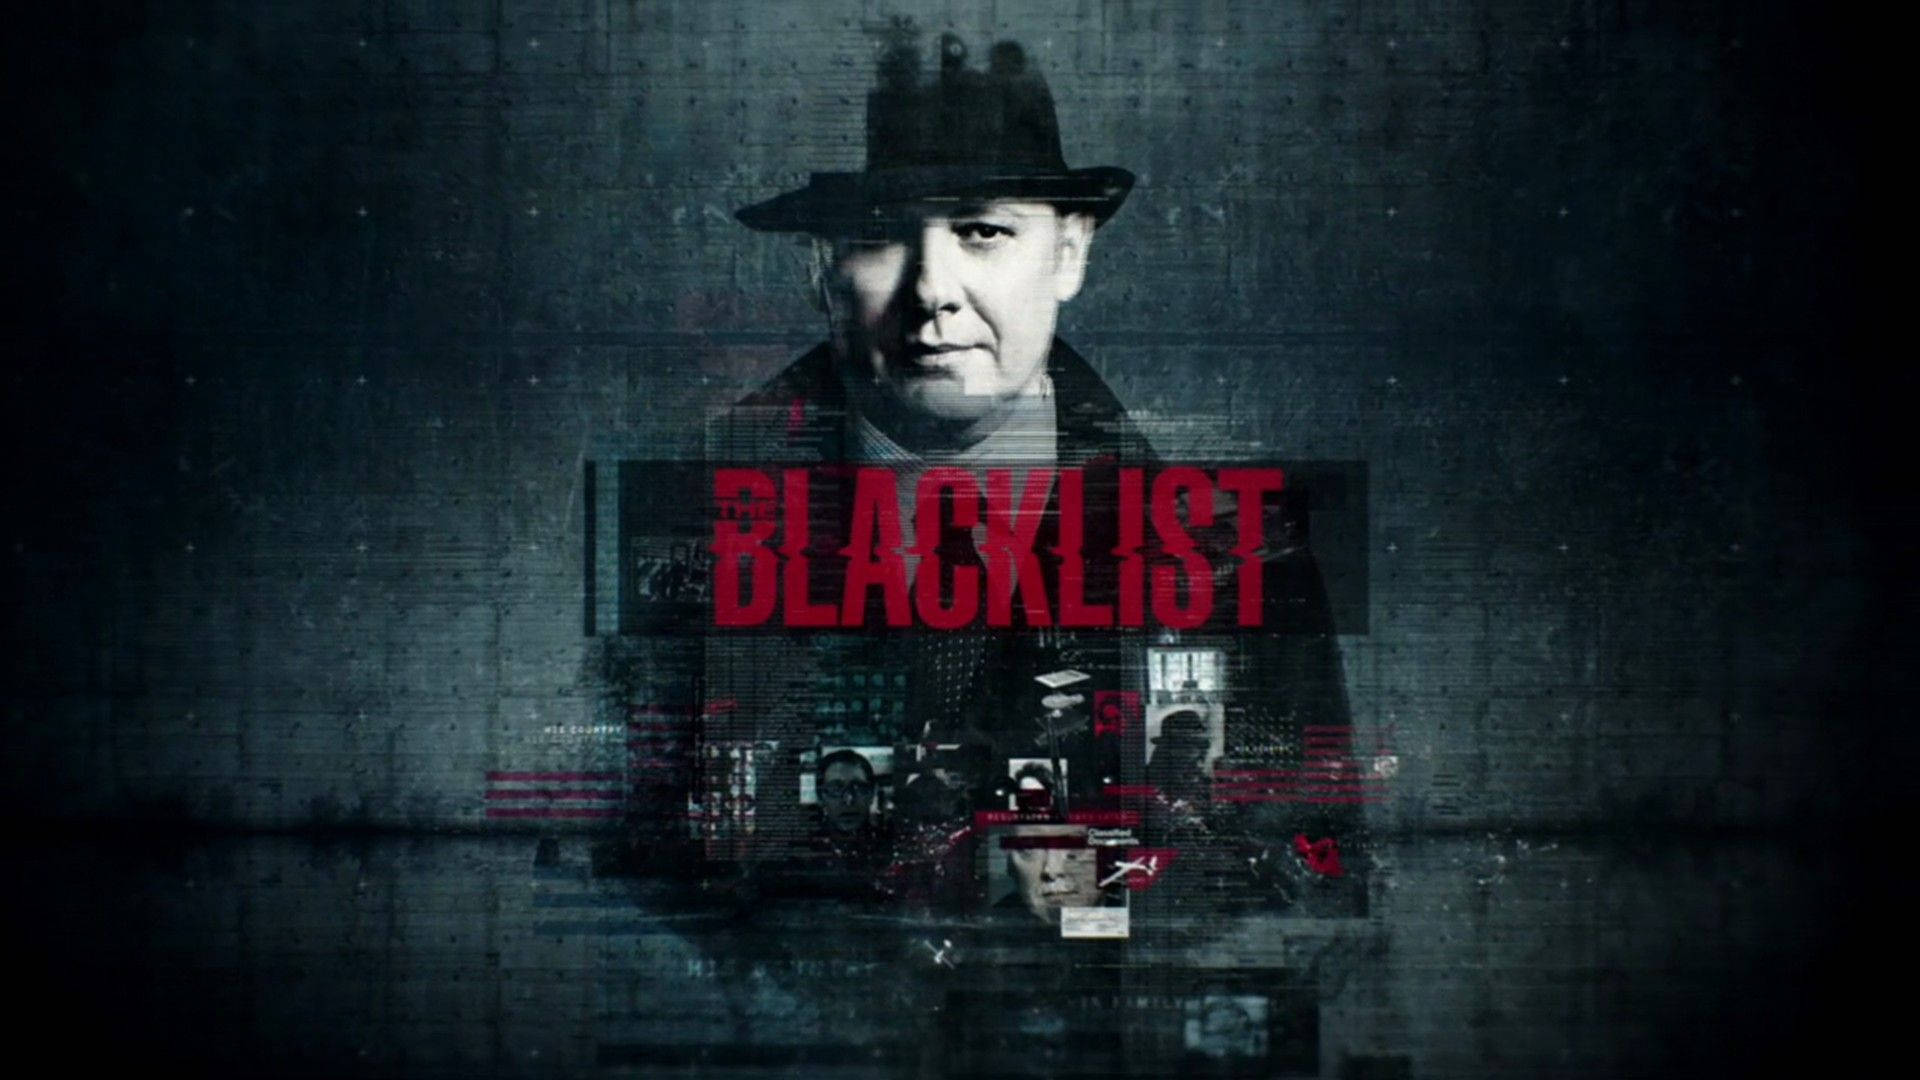 Blacklist Background Wallpaper